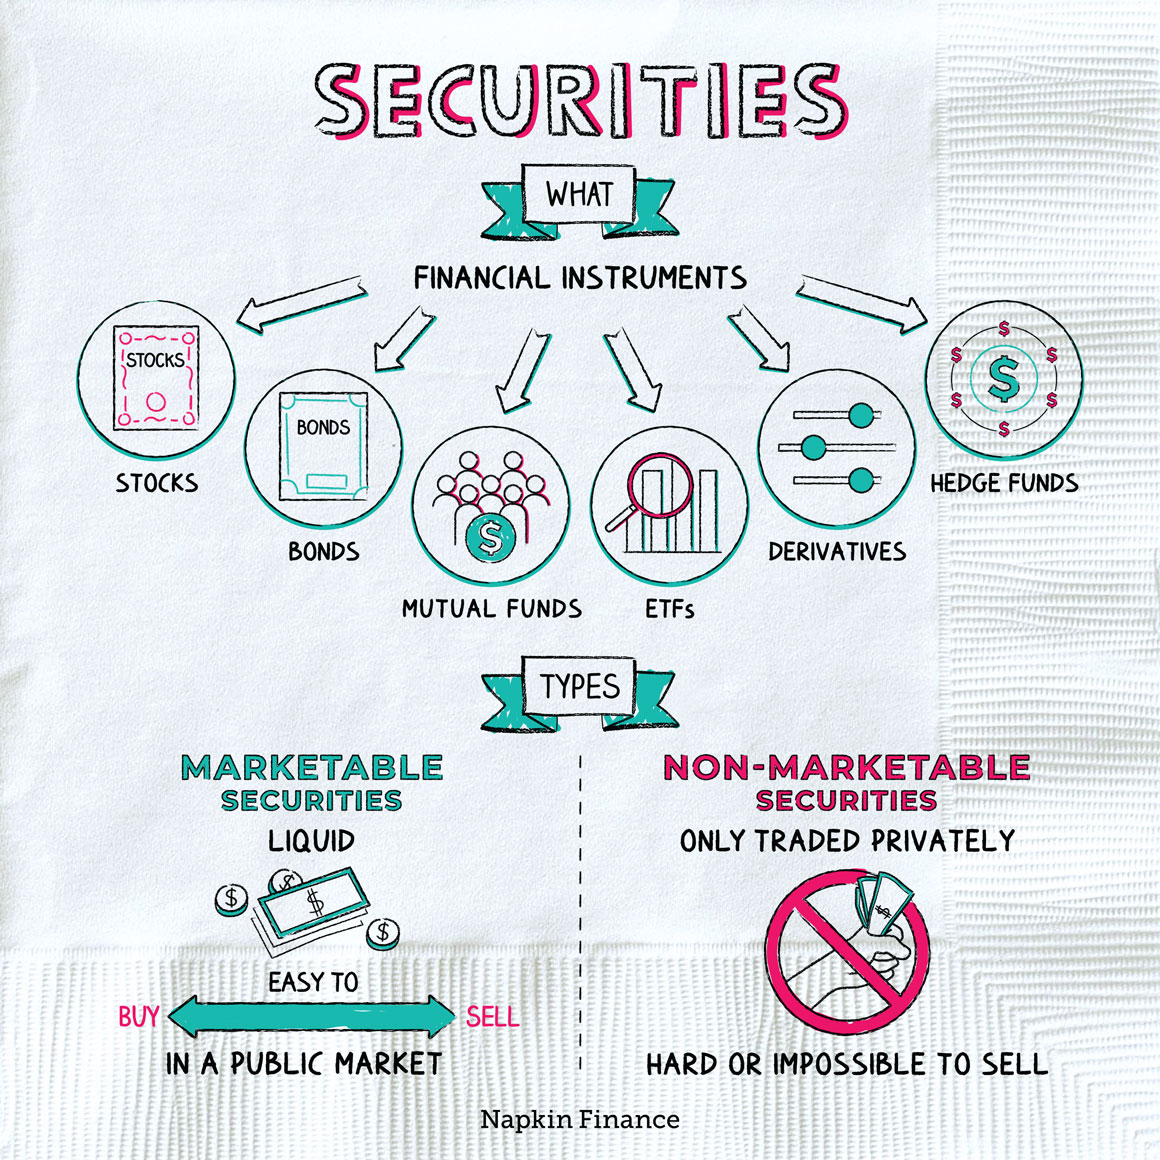 Securities